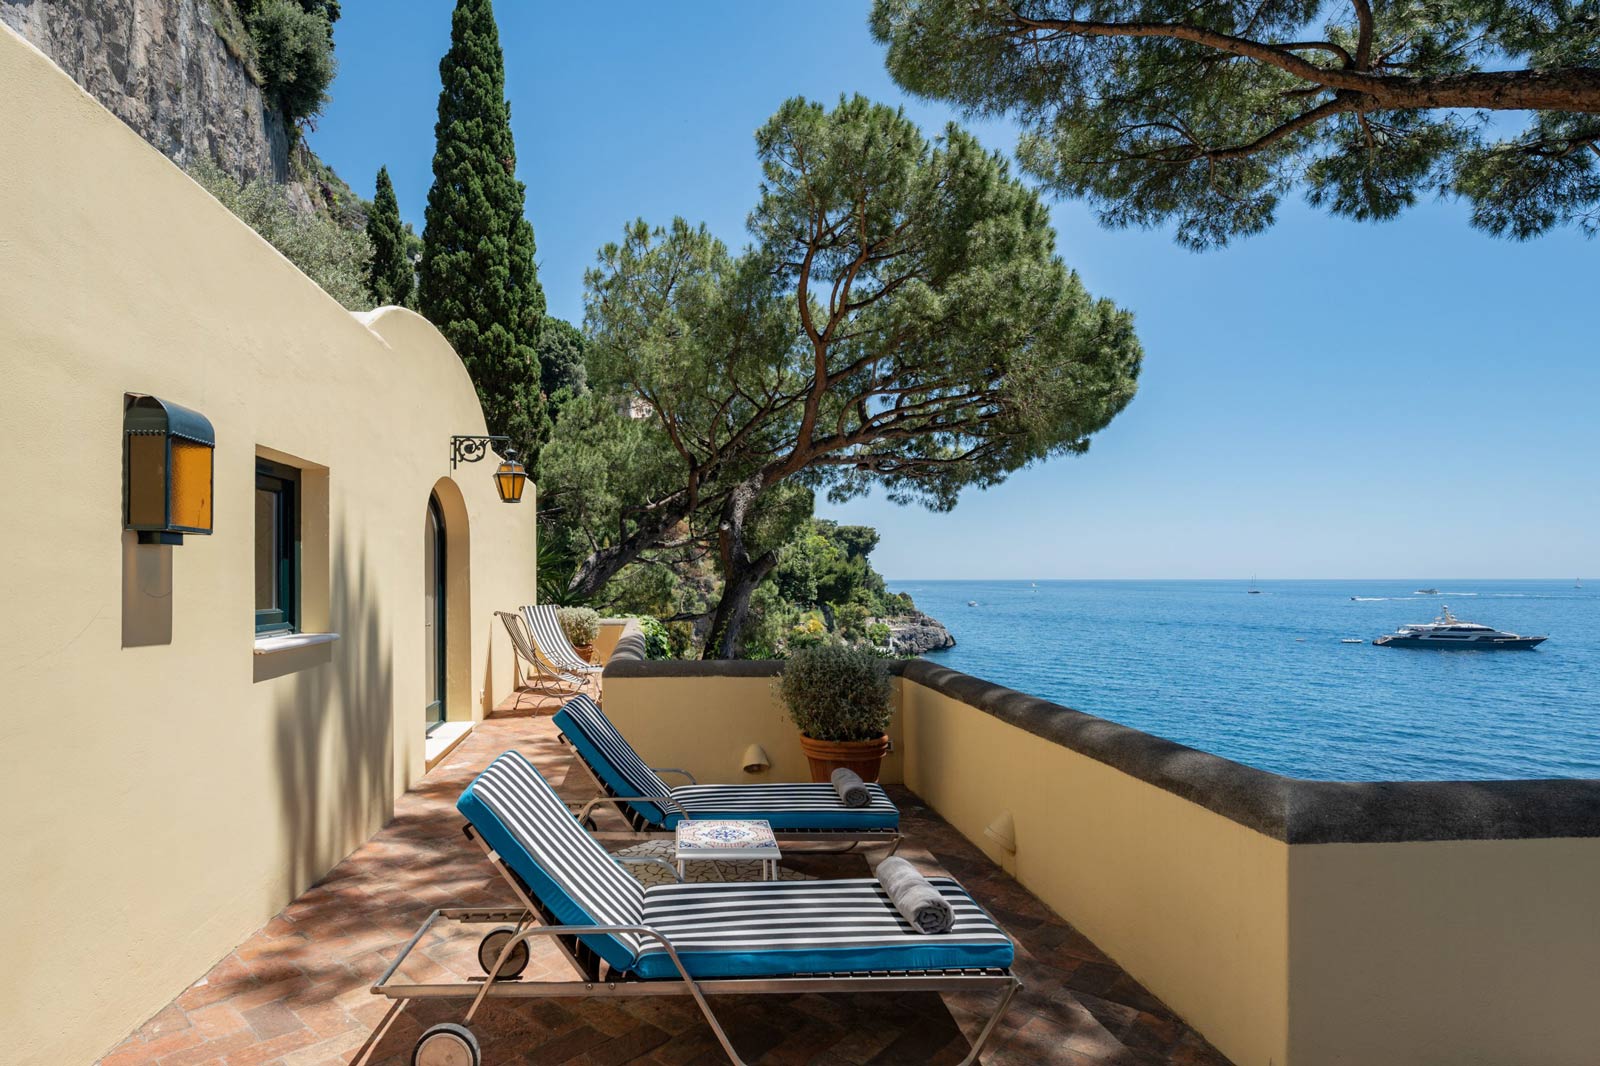 Where to stay in Positano Villa Treville Amalfi Coast 